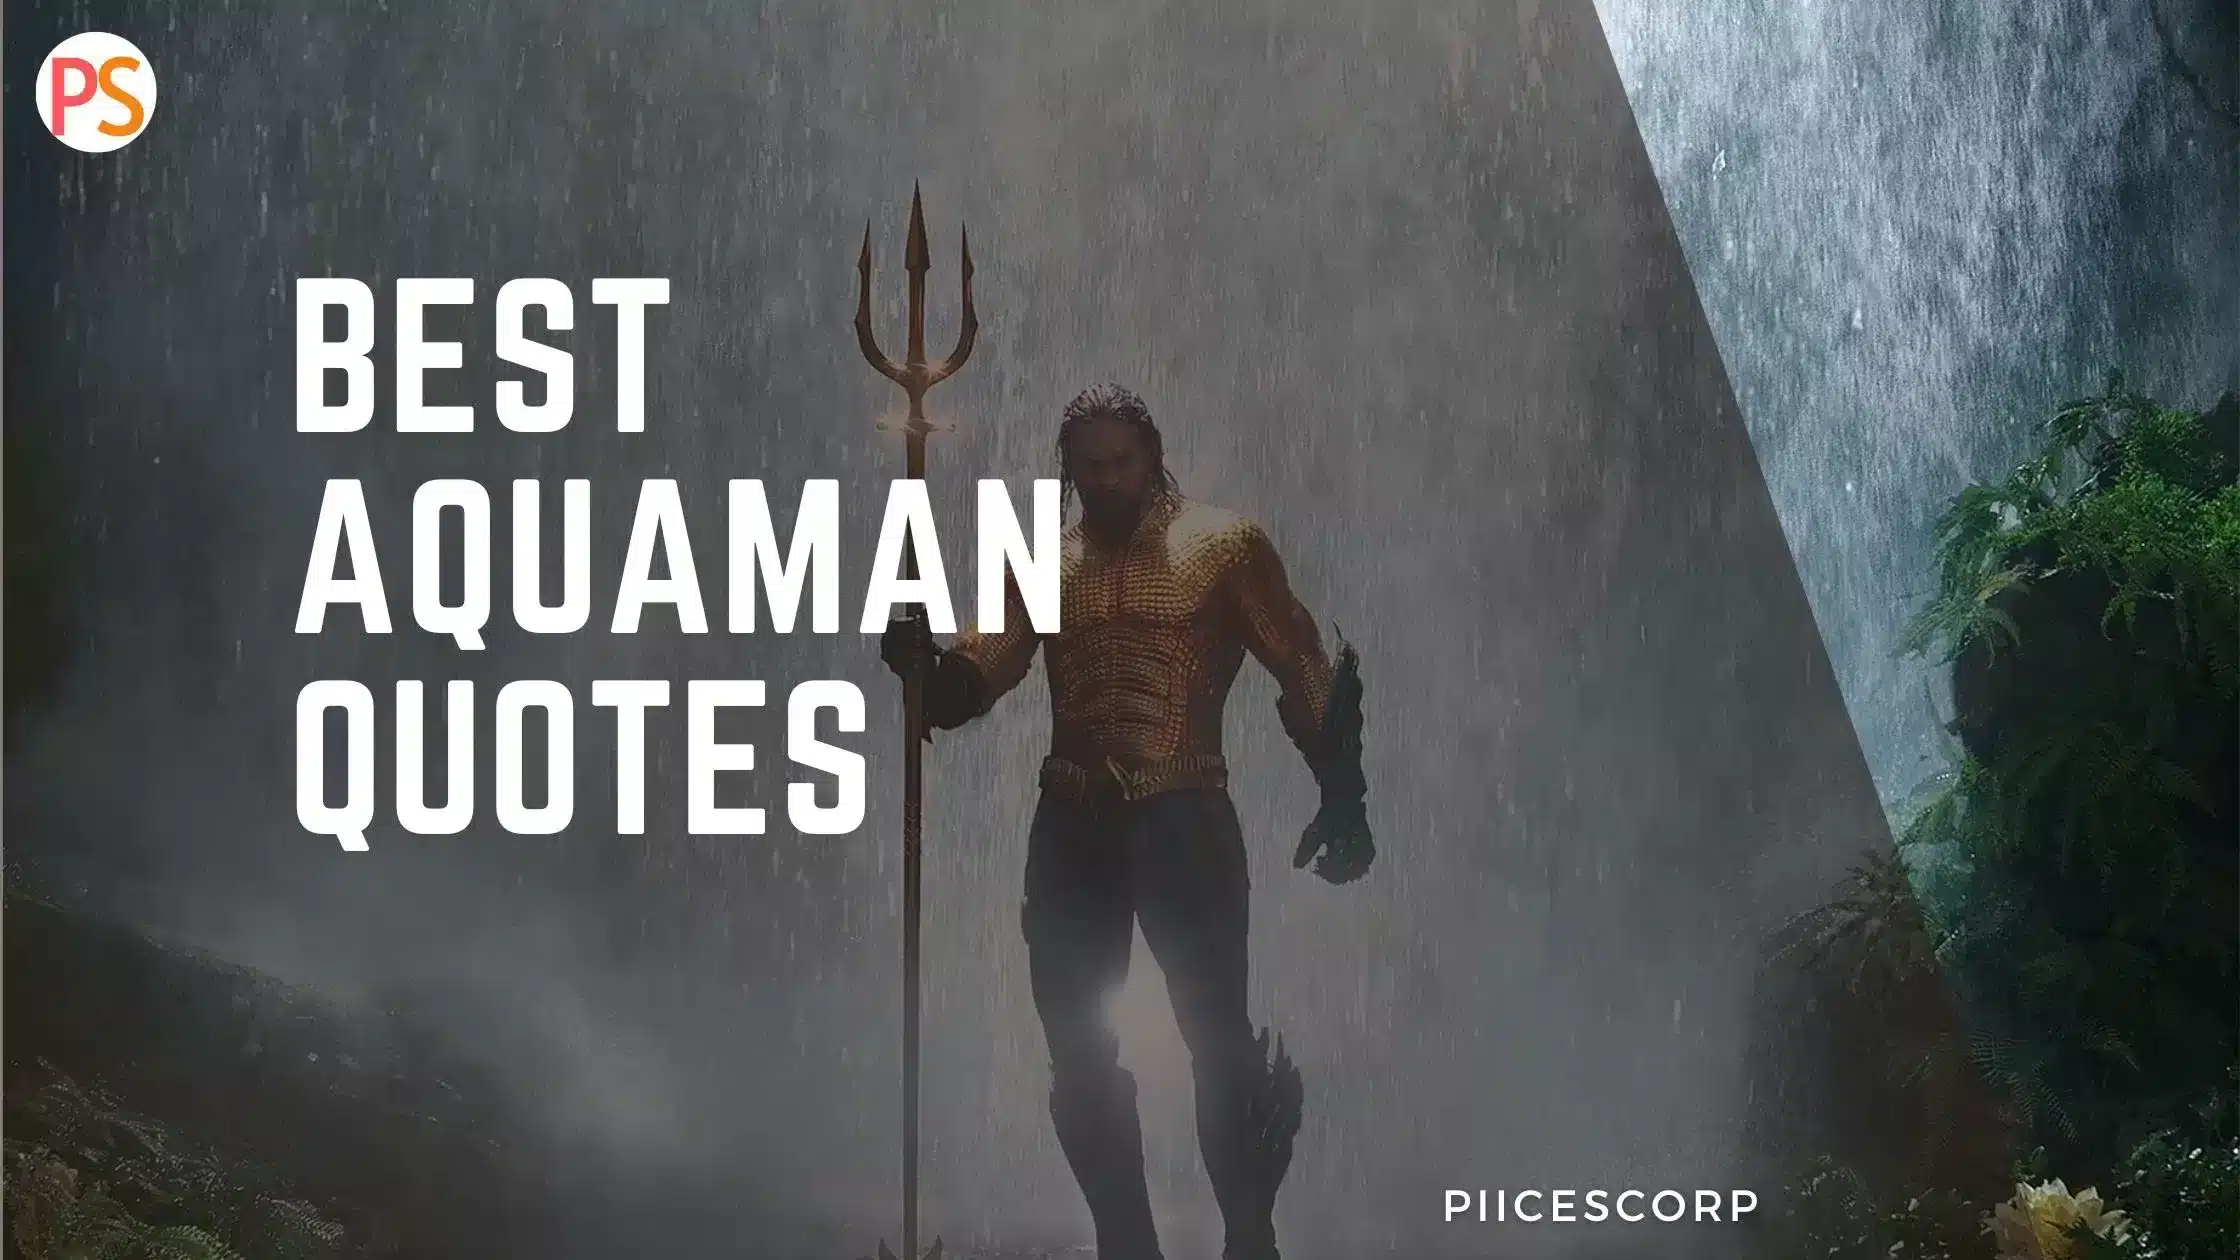 Best Aquaman quotes